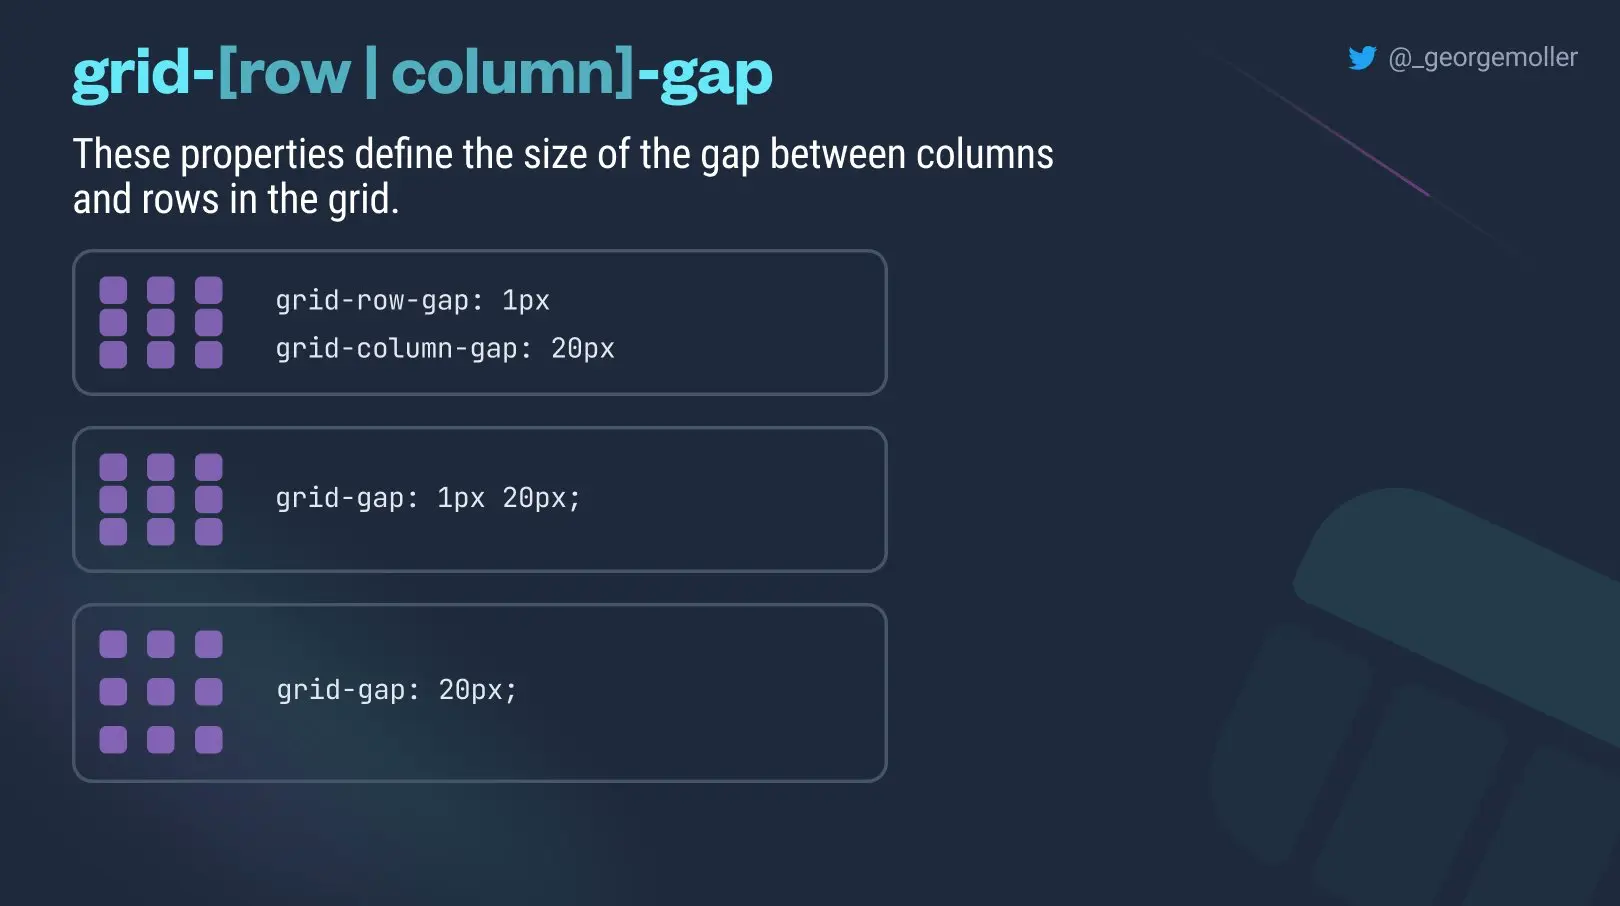 grid-[row|column]-gap